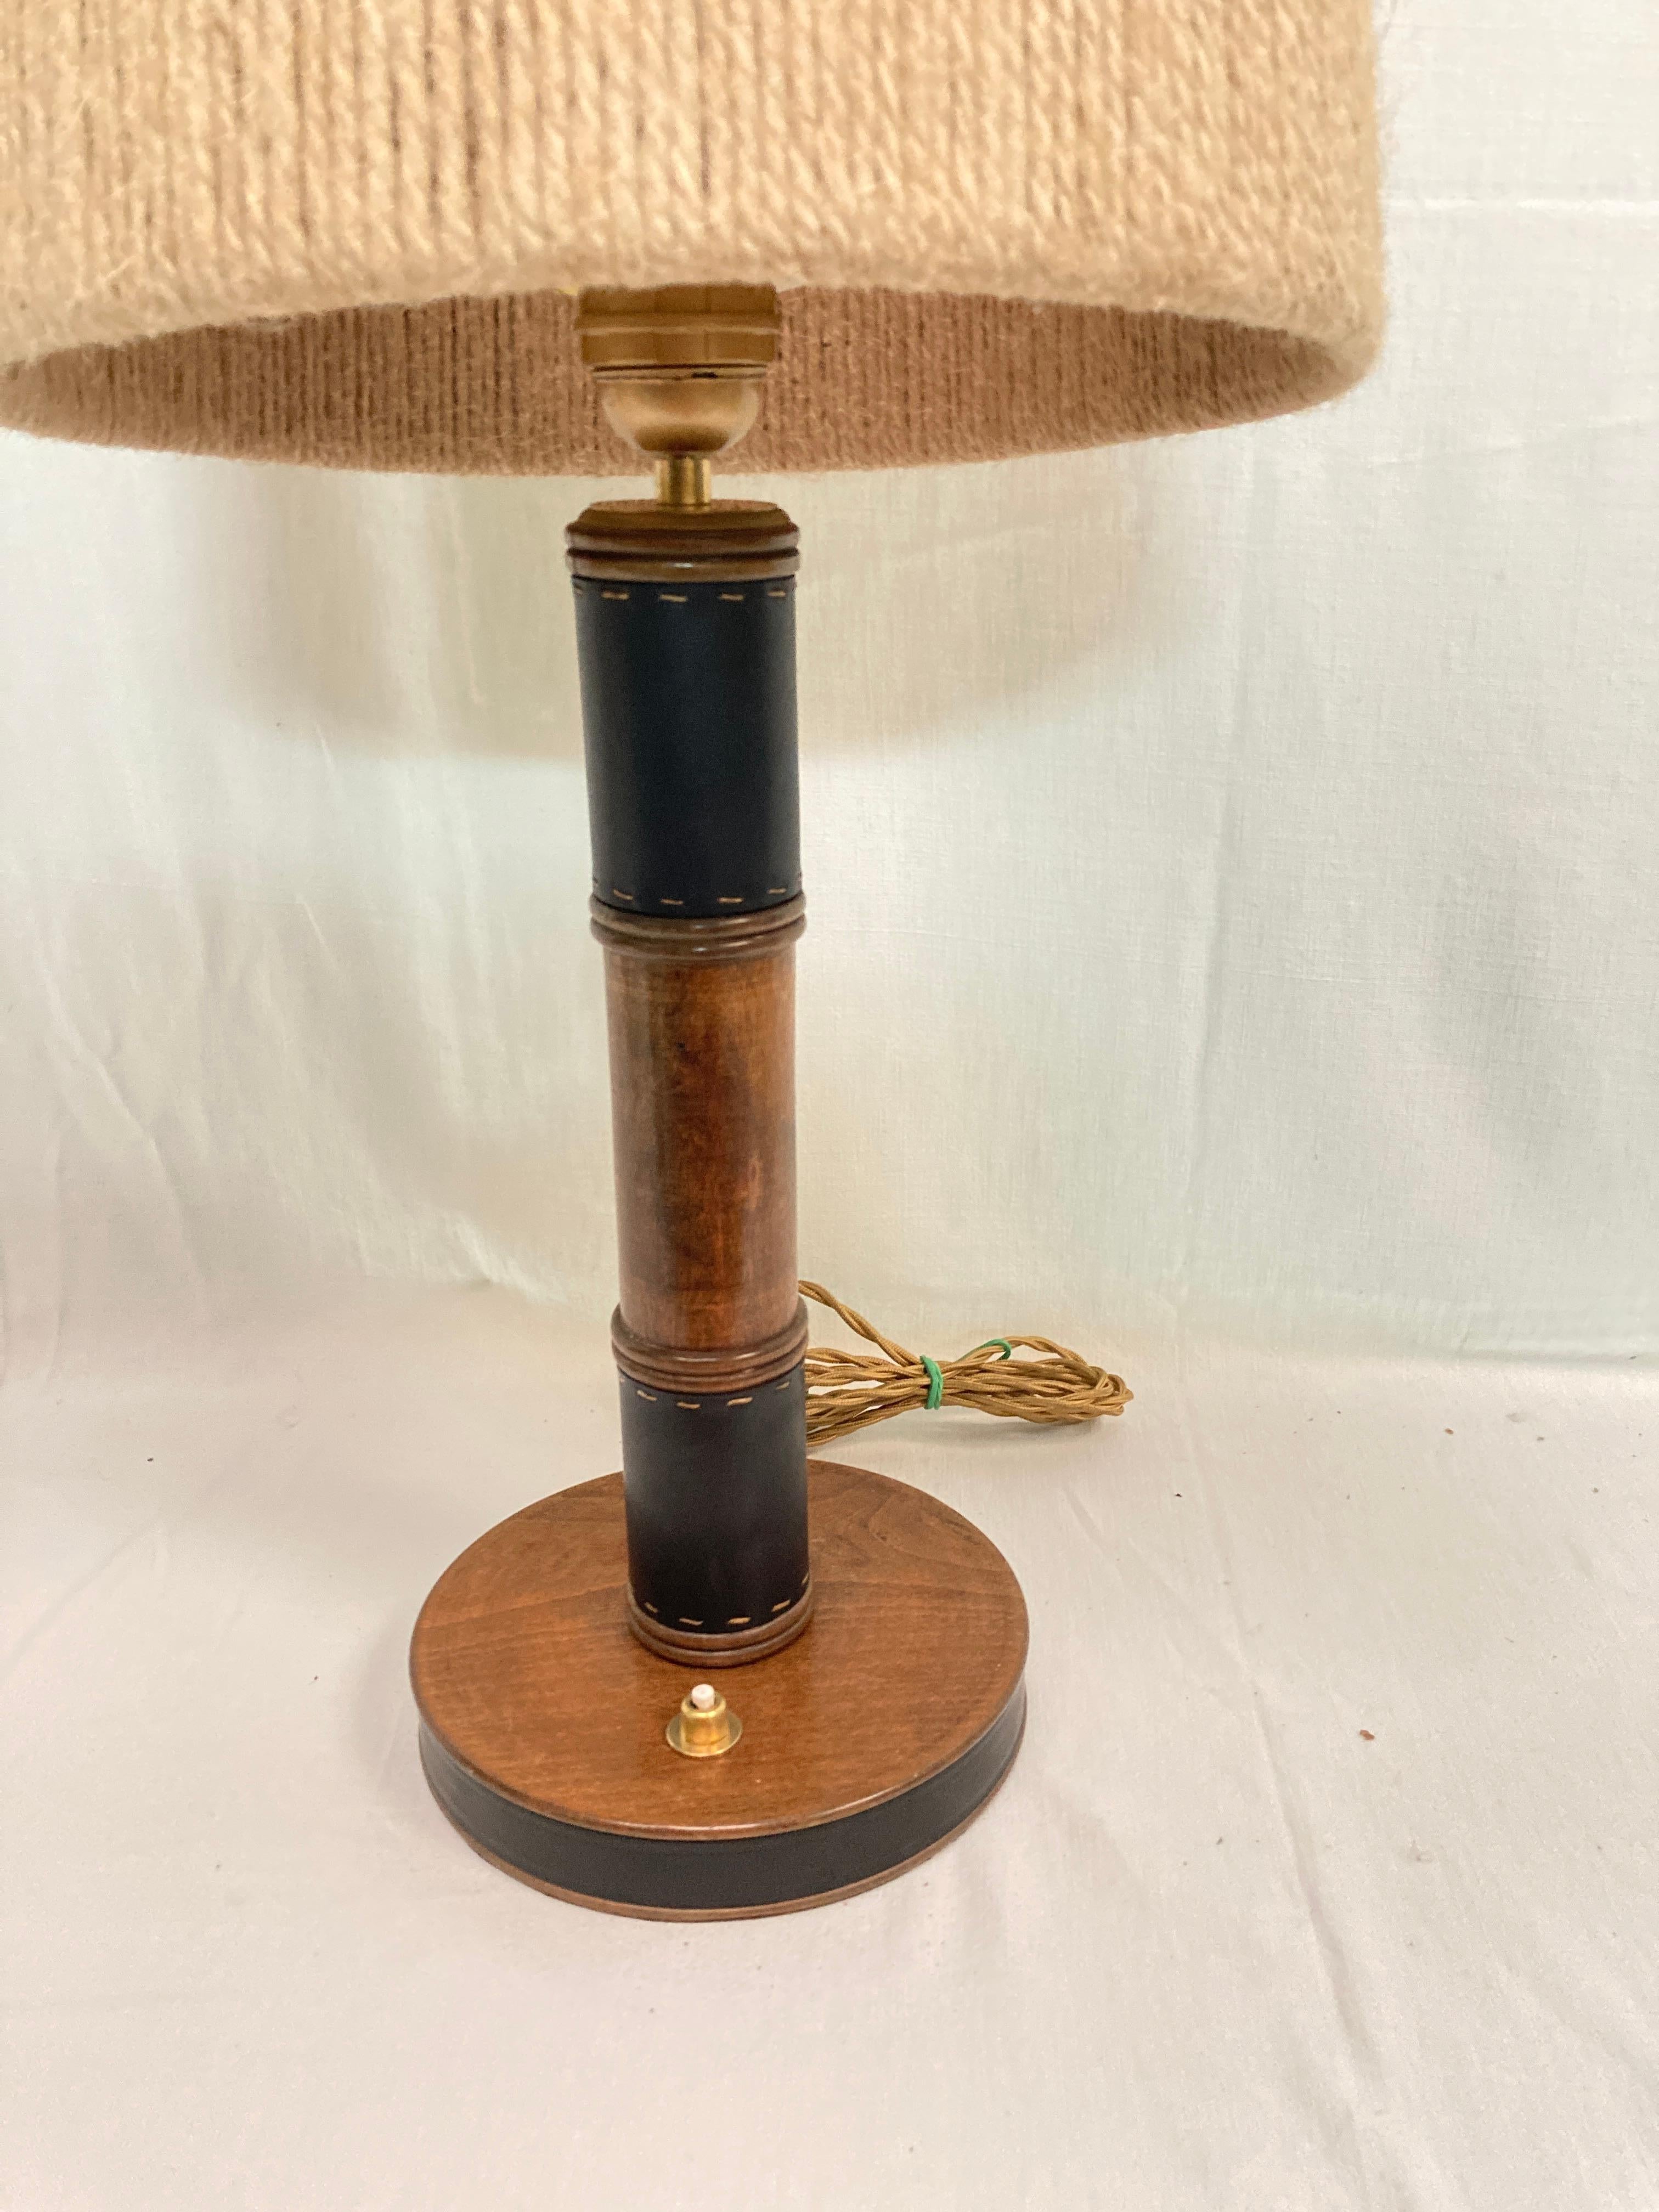 Lampe de table en cuir cousue des années 1950 par Jacques Adnet
France
Dimensions données sans ombre
Pas d'abat-jour inclus